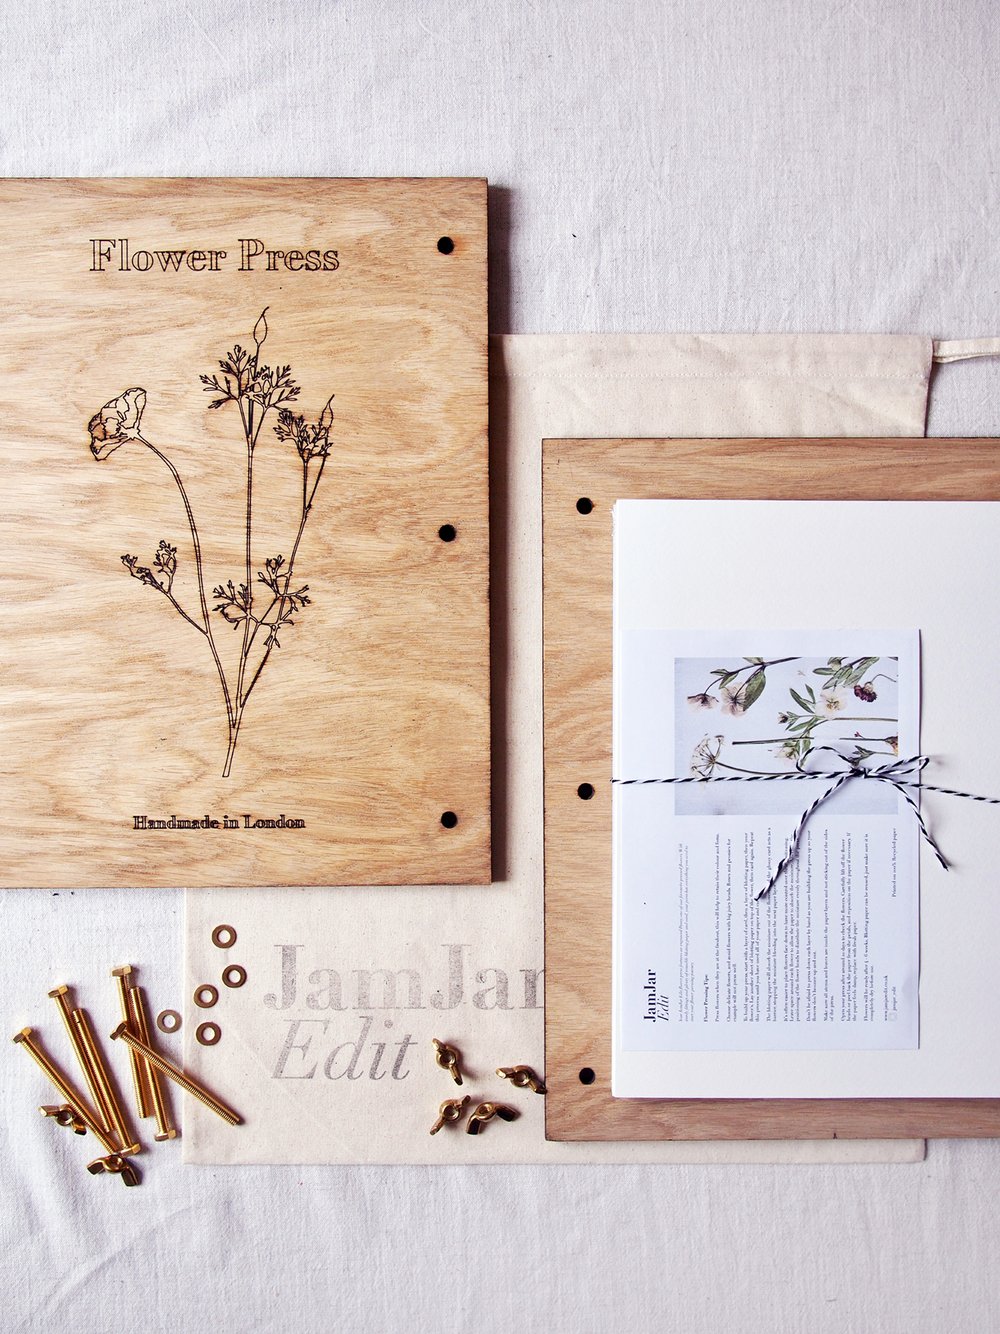 Flower Press Kit